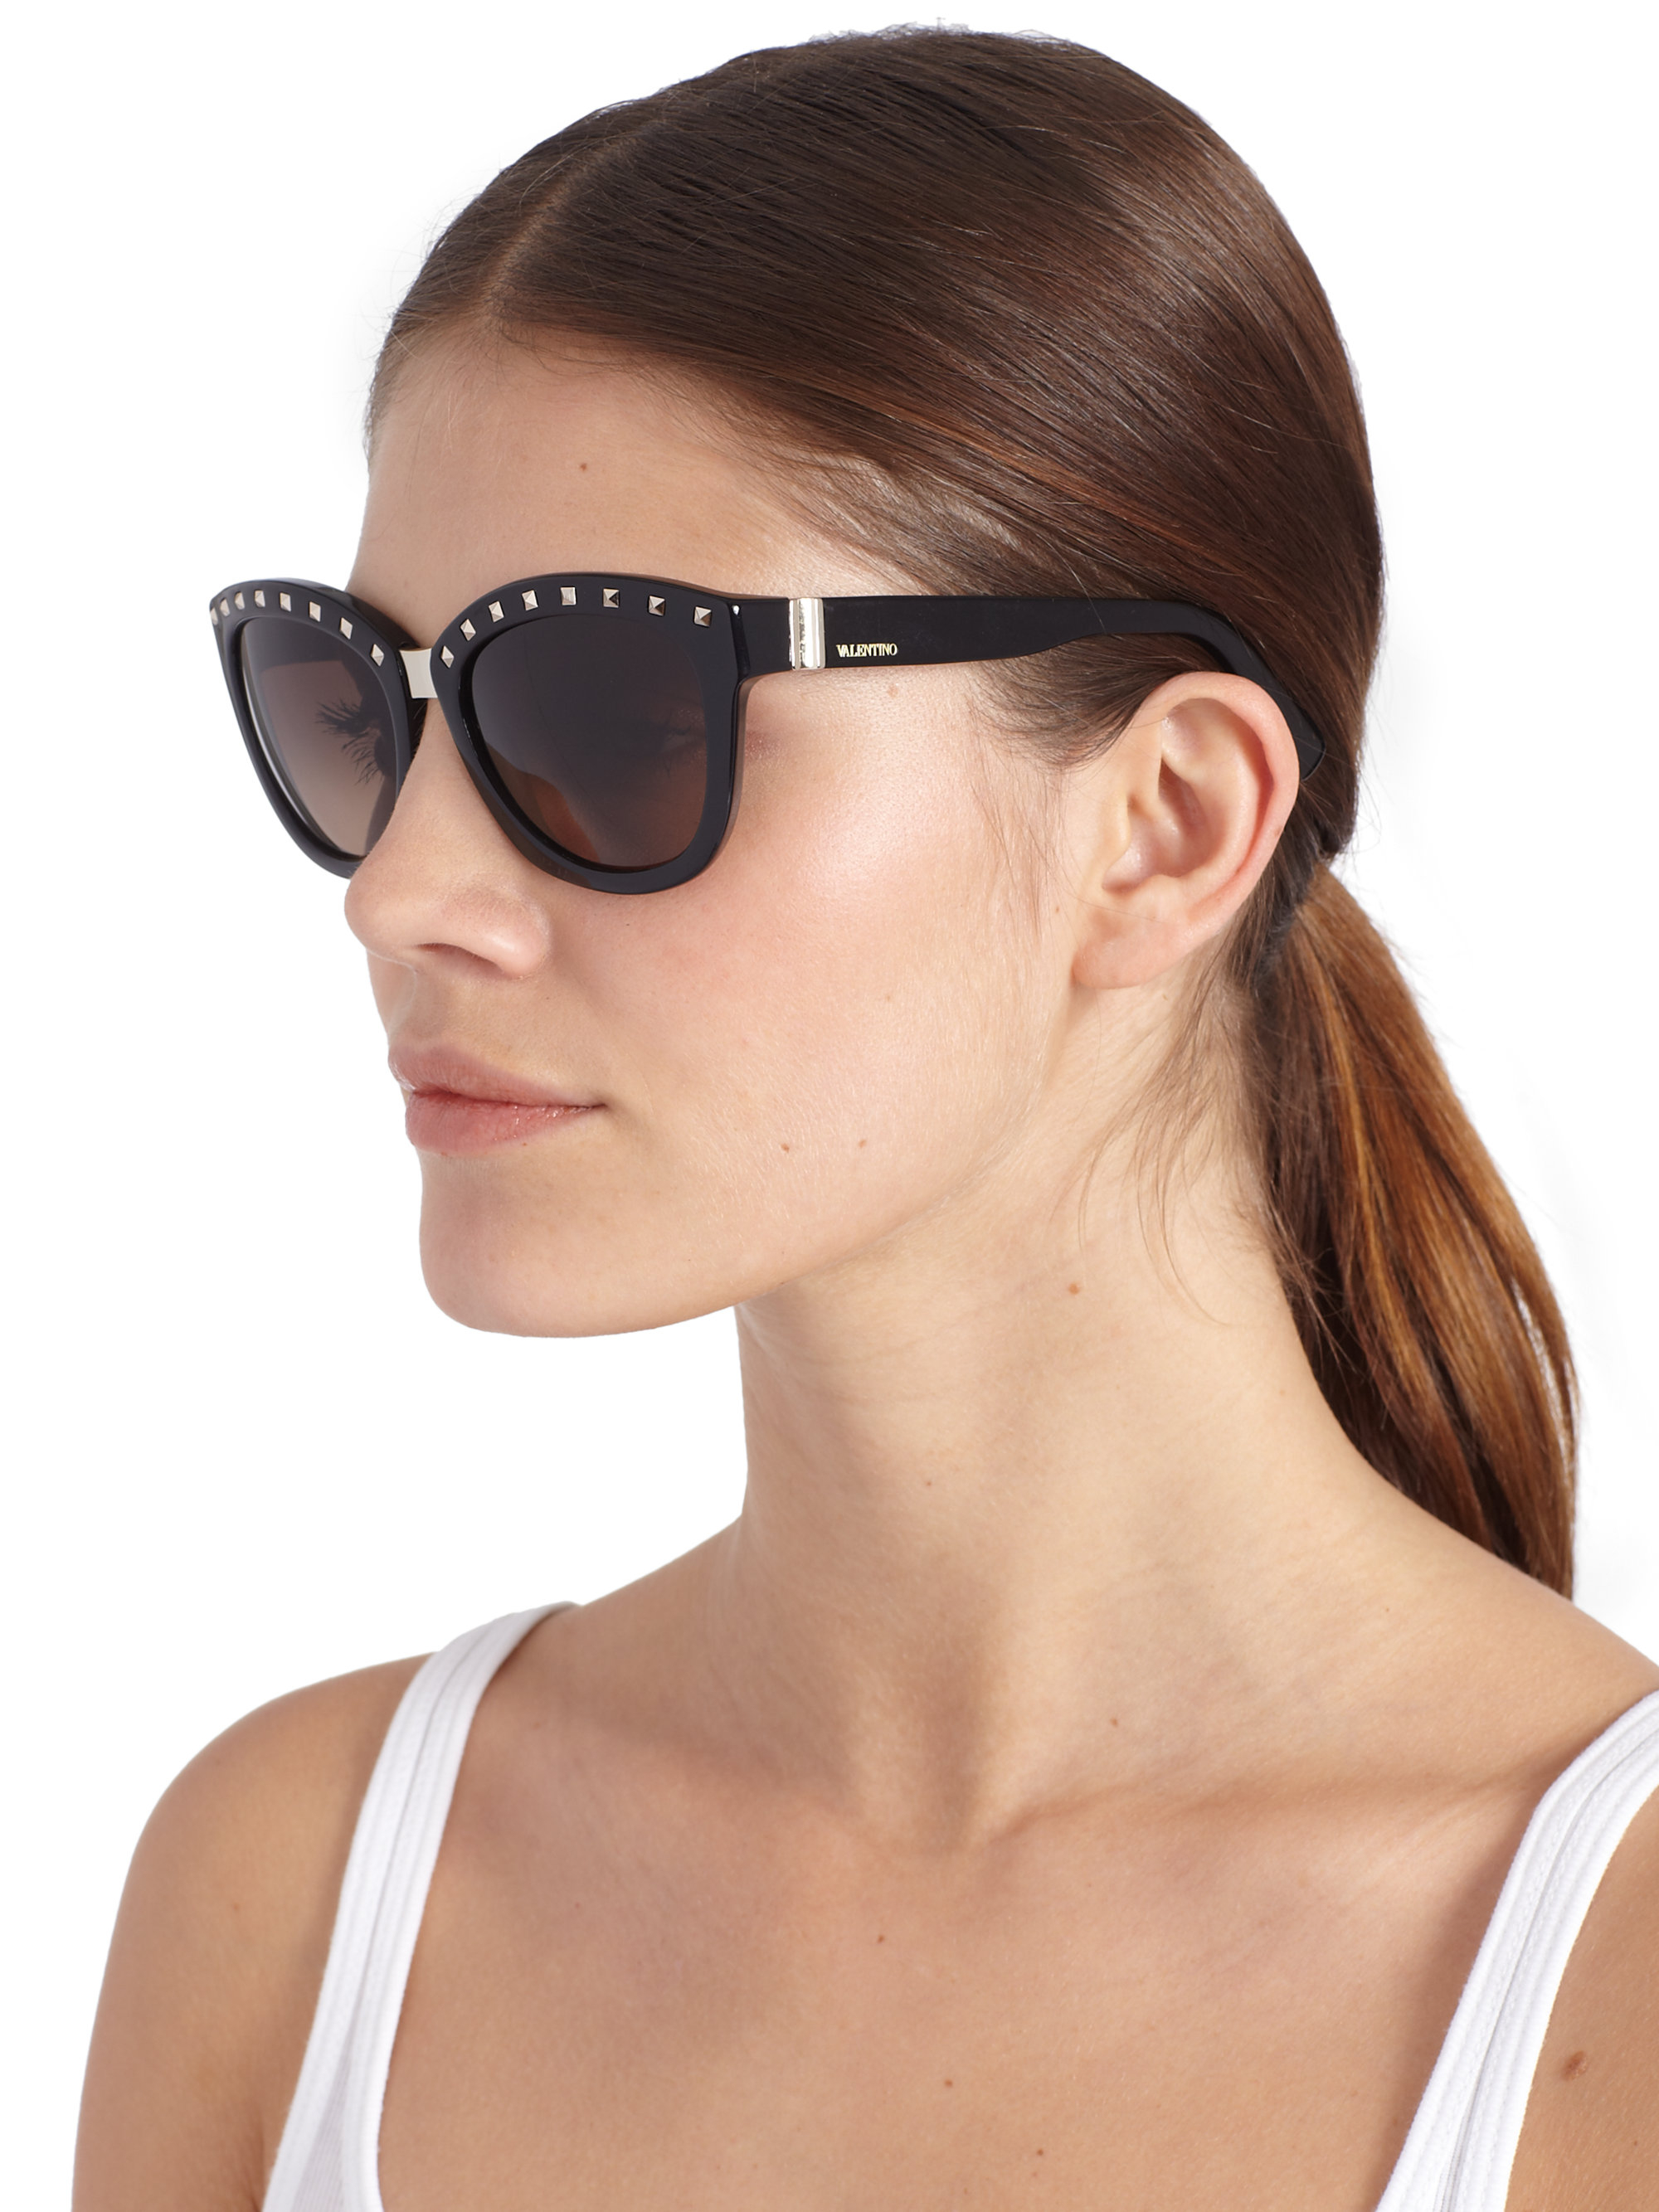 black studded sunglasses,Quality assurance,protein-burger.com